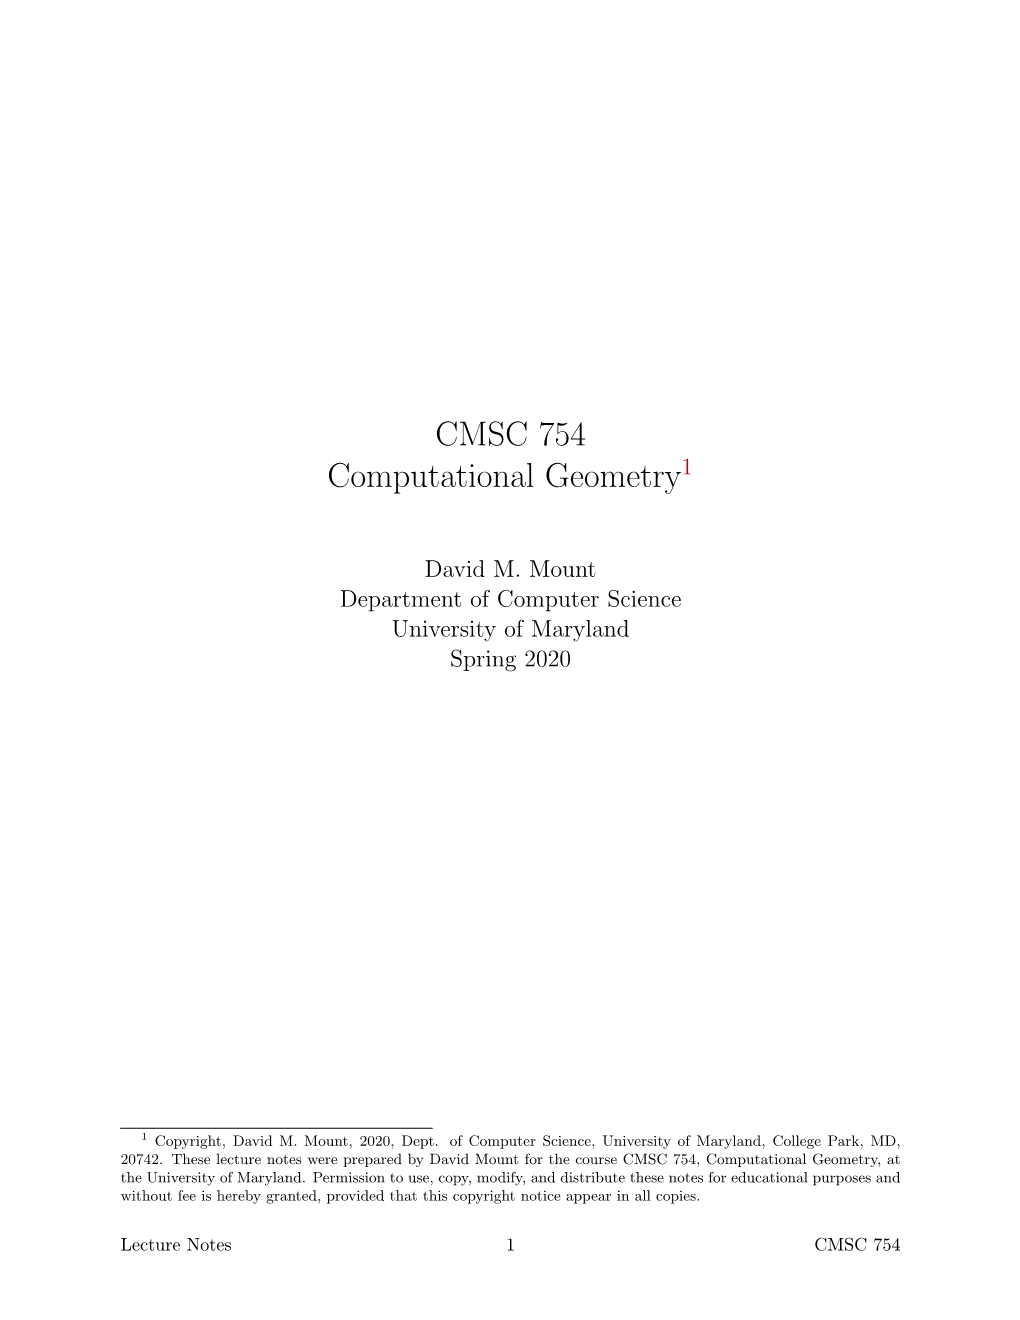 CMSC 754 Computational Geometry1